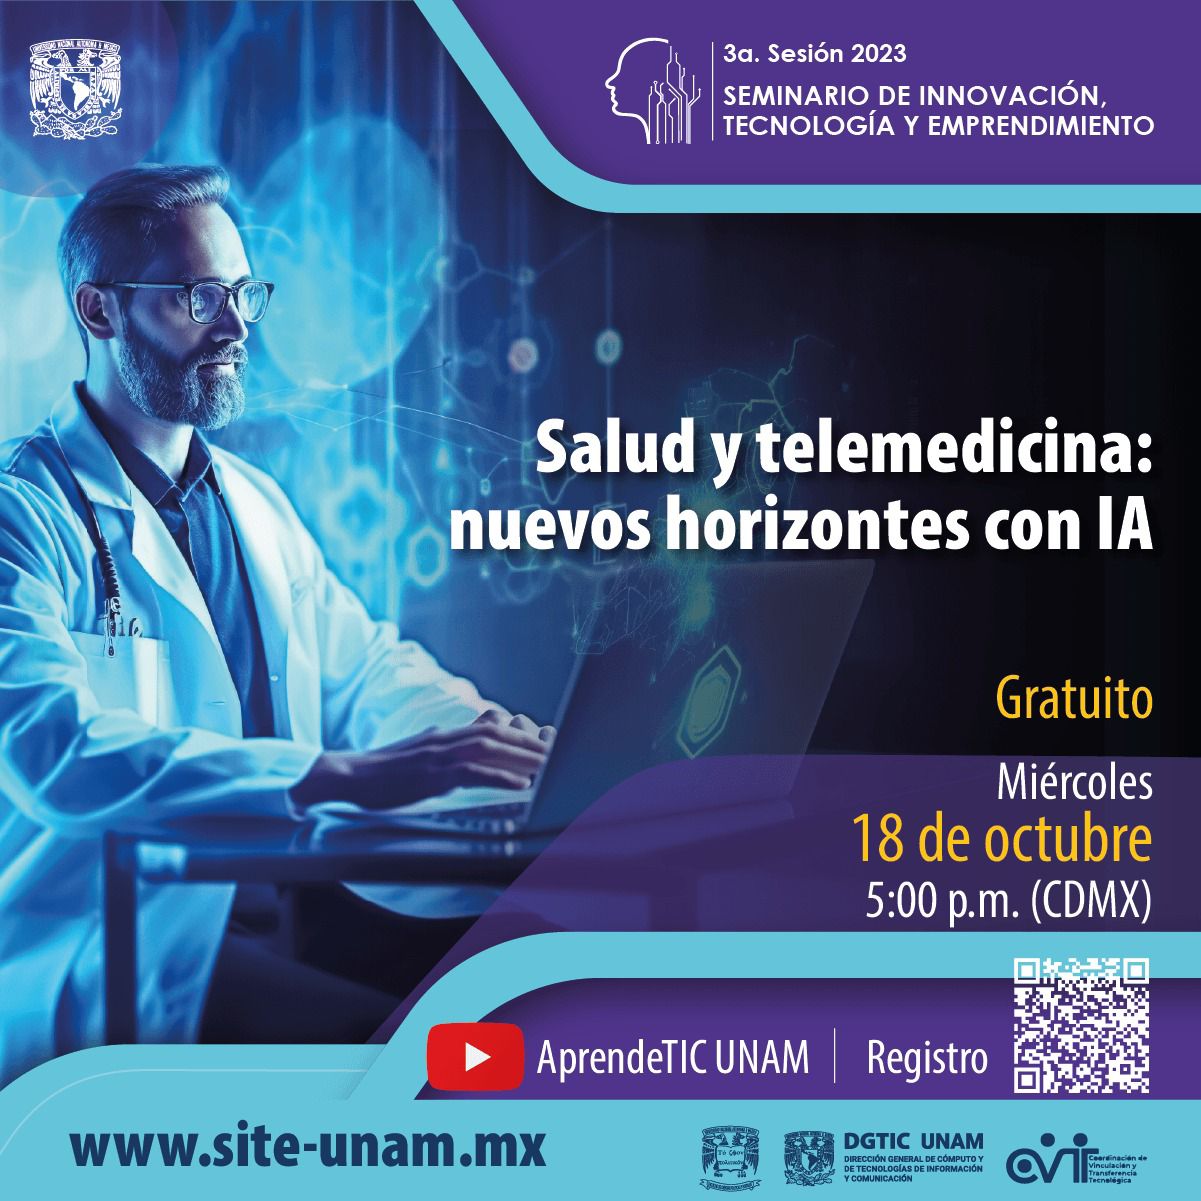 Site UNAM